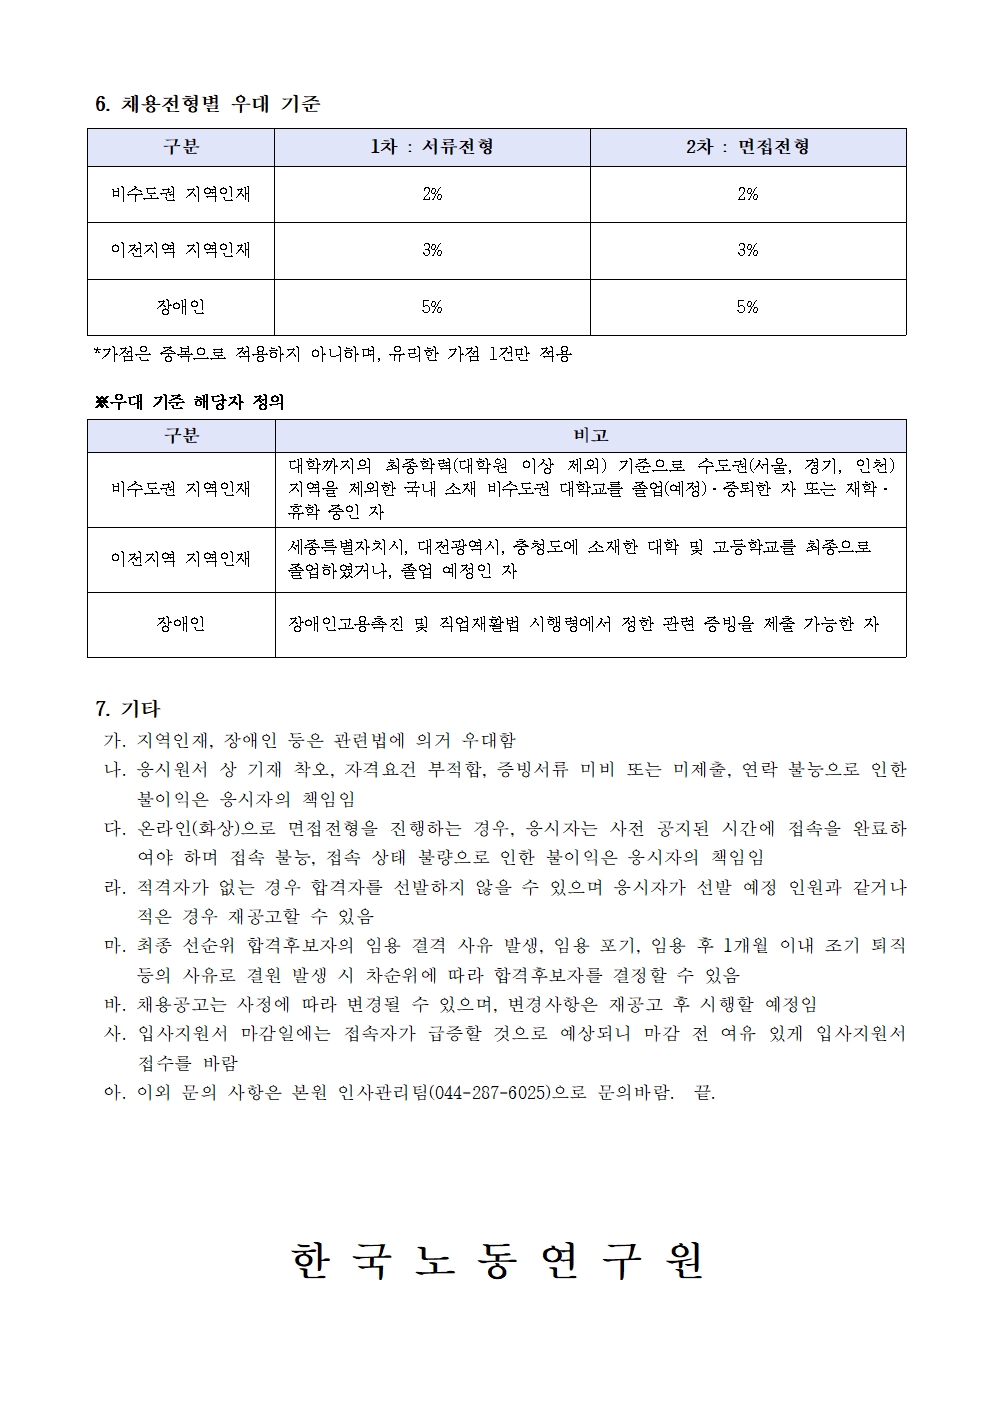 (3/3) 한국노동연구원 기간제 행정원 채용 공고 - 자세한 내용은 하단 참조